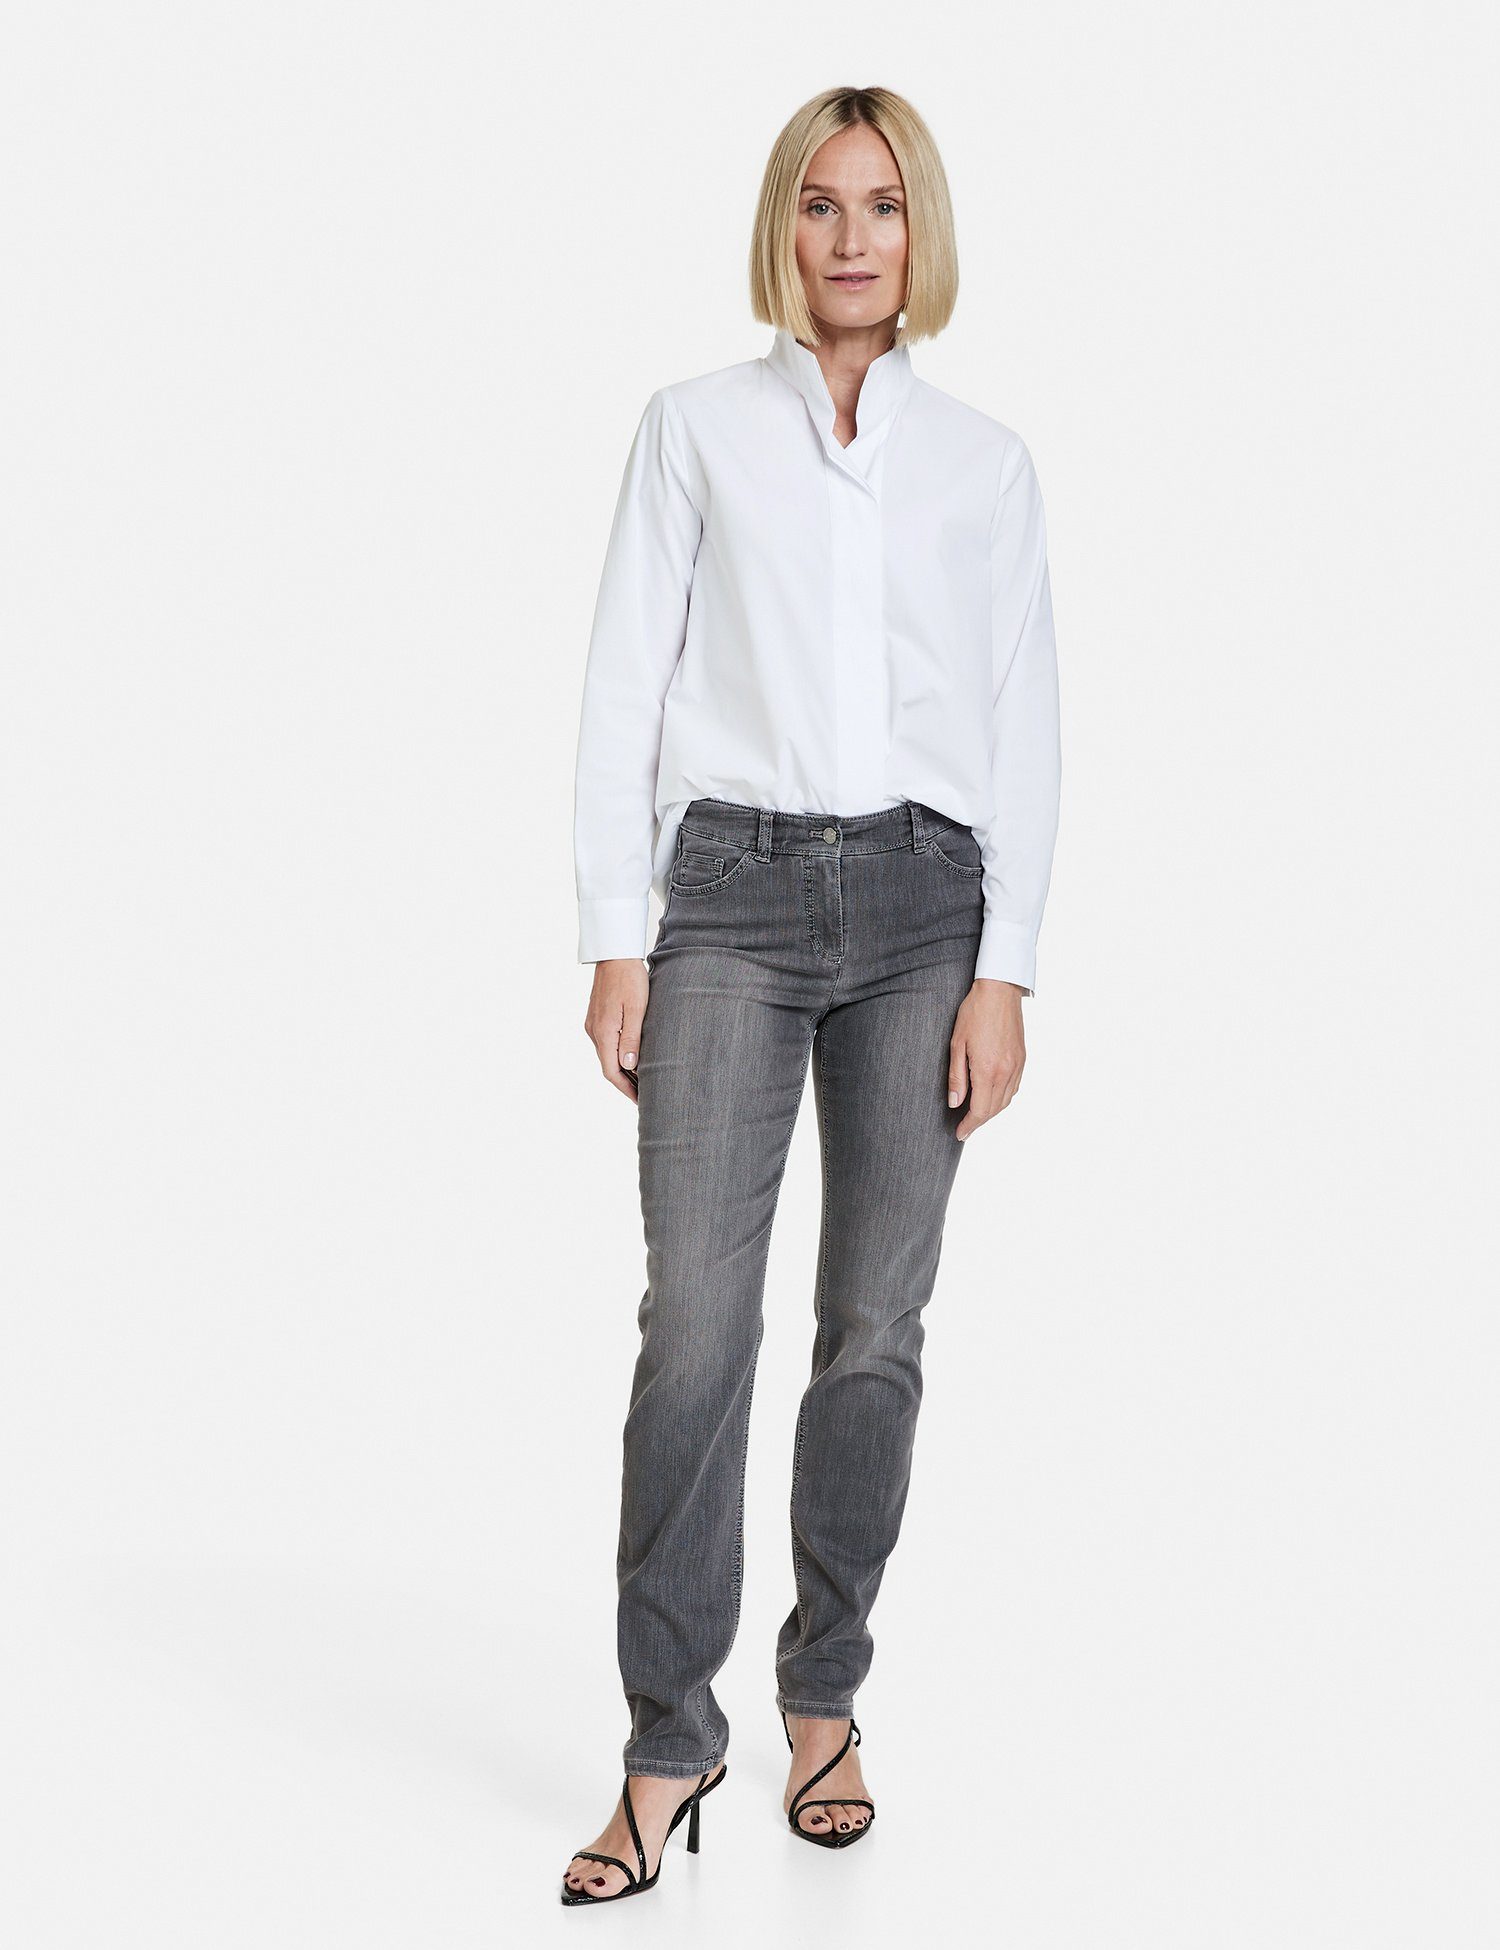 Best4me WEBER Denim use Jeans Anthra 5-Pocket mit Slimfit Stretch-Jeans GERRY